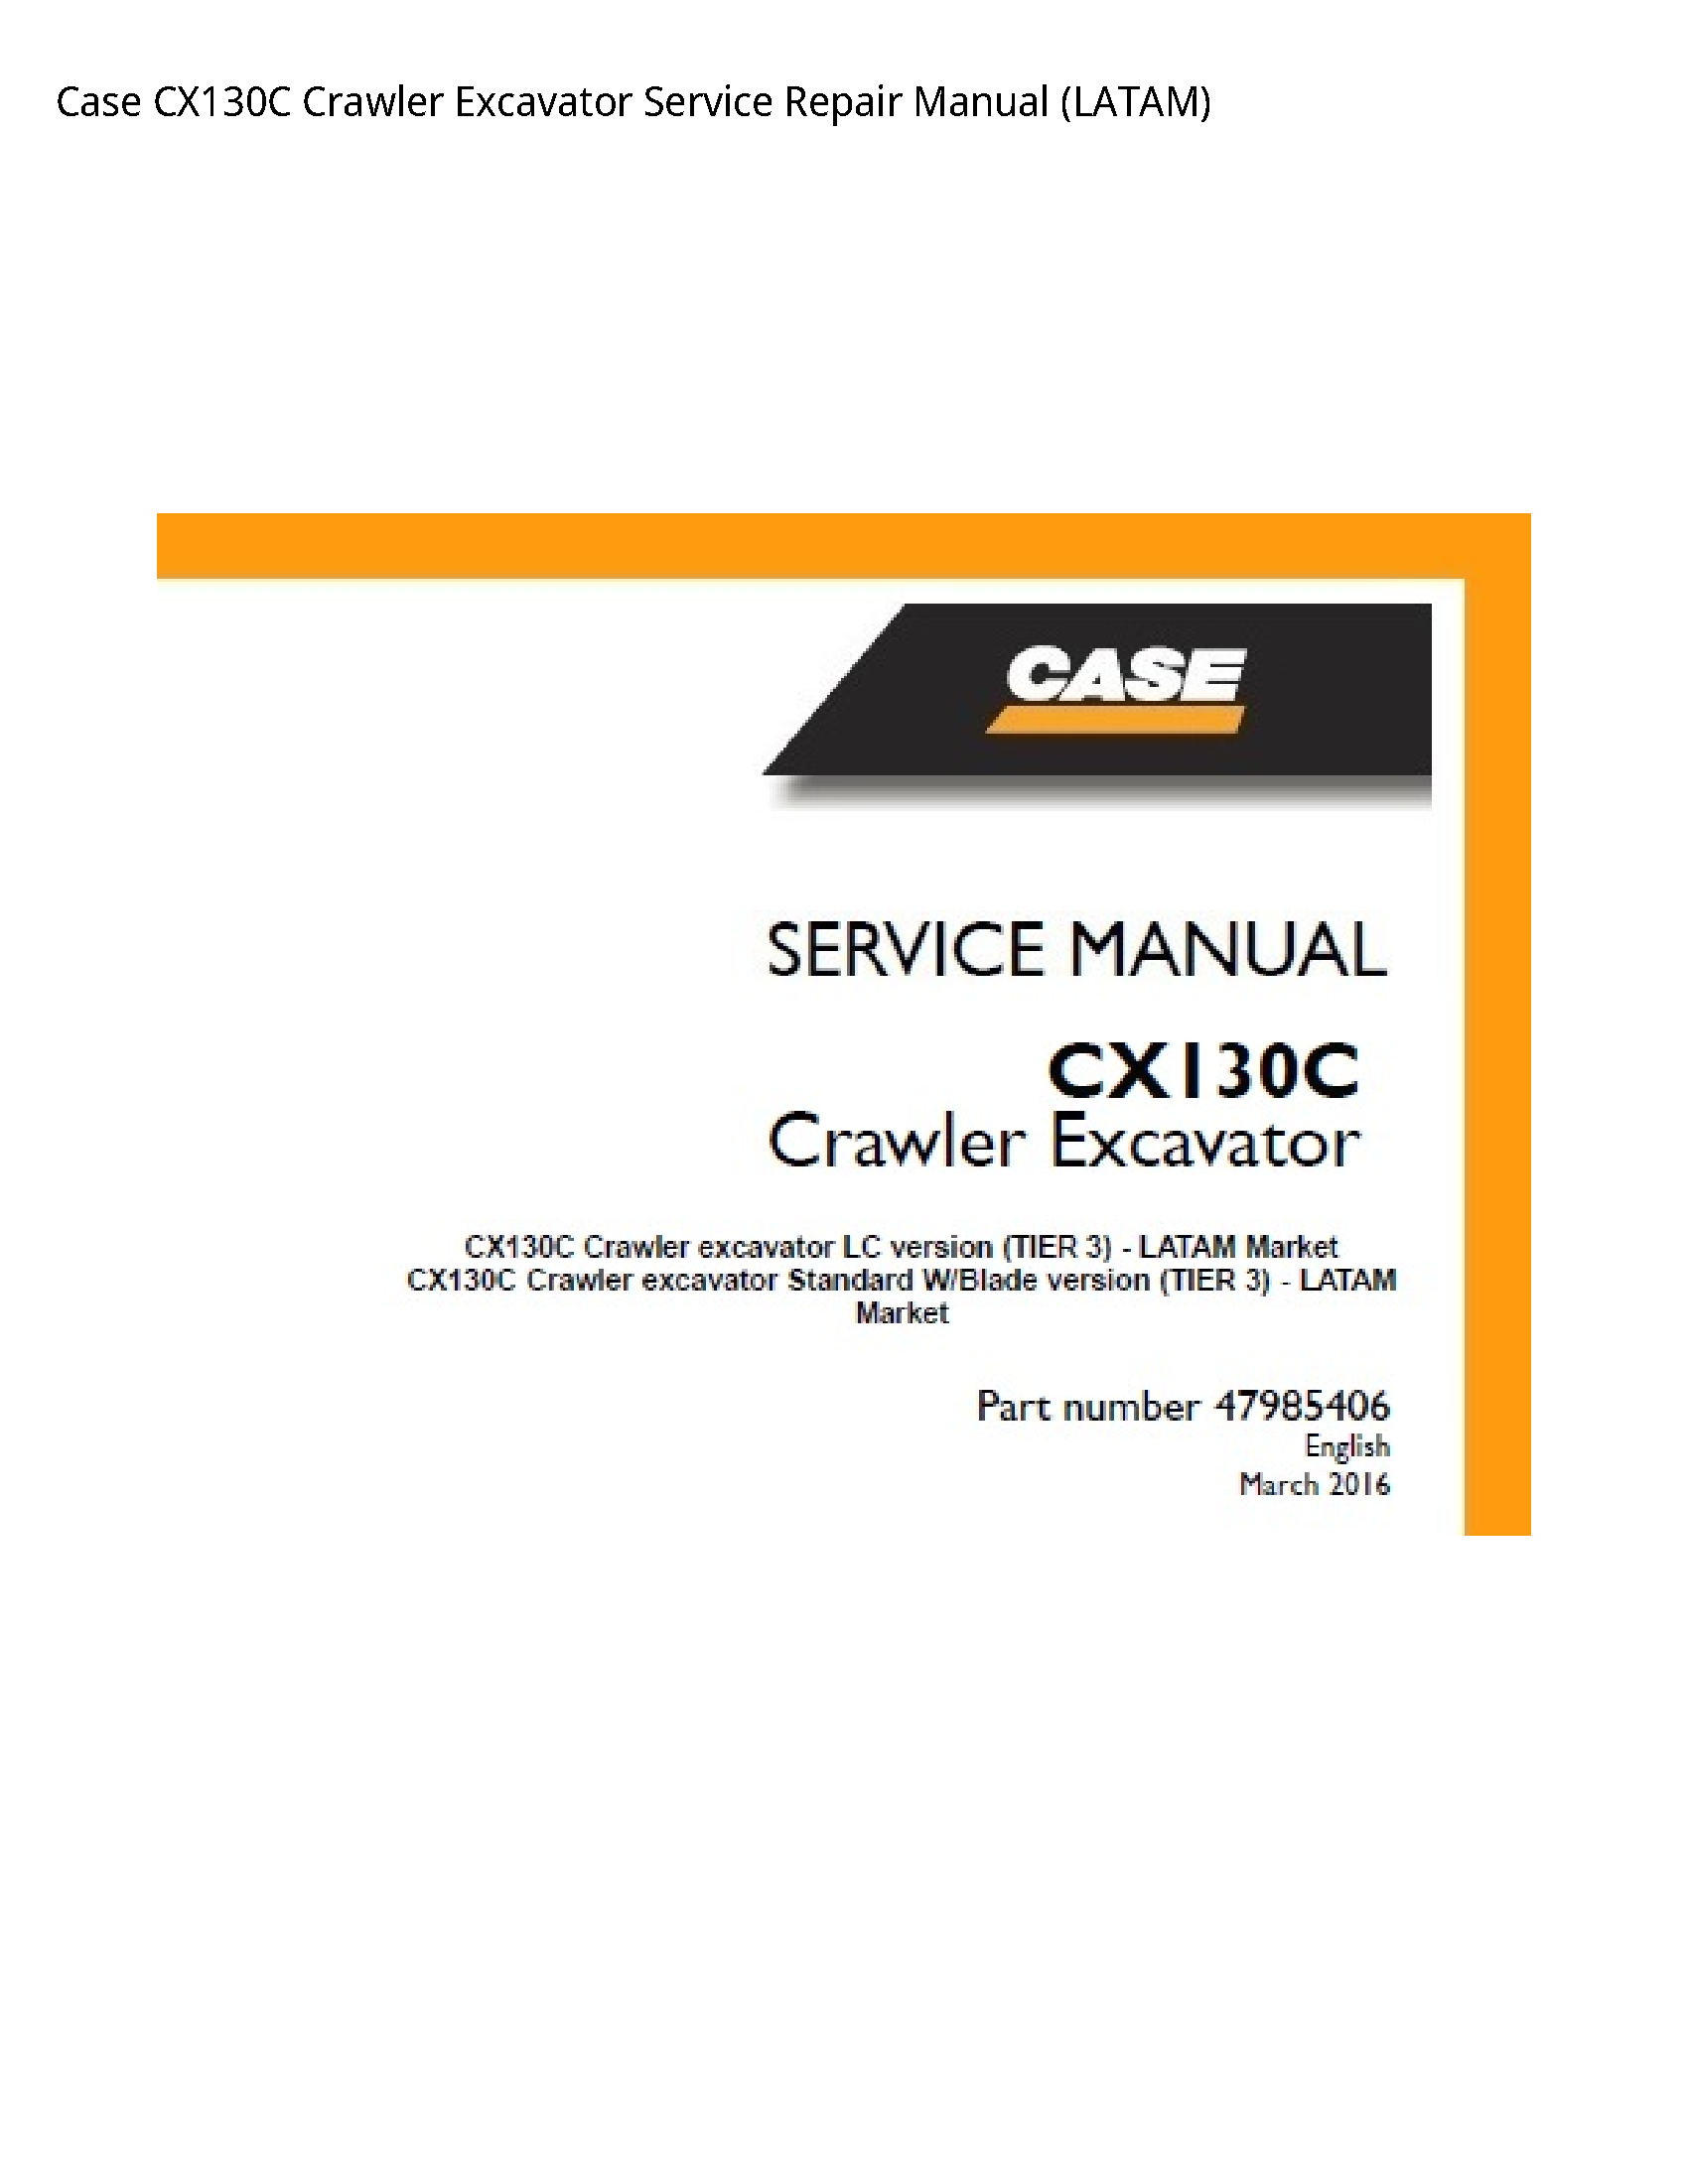 Case/Case IH CX130C Crawler Excavator manual